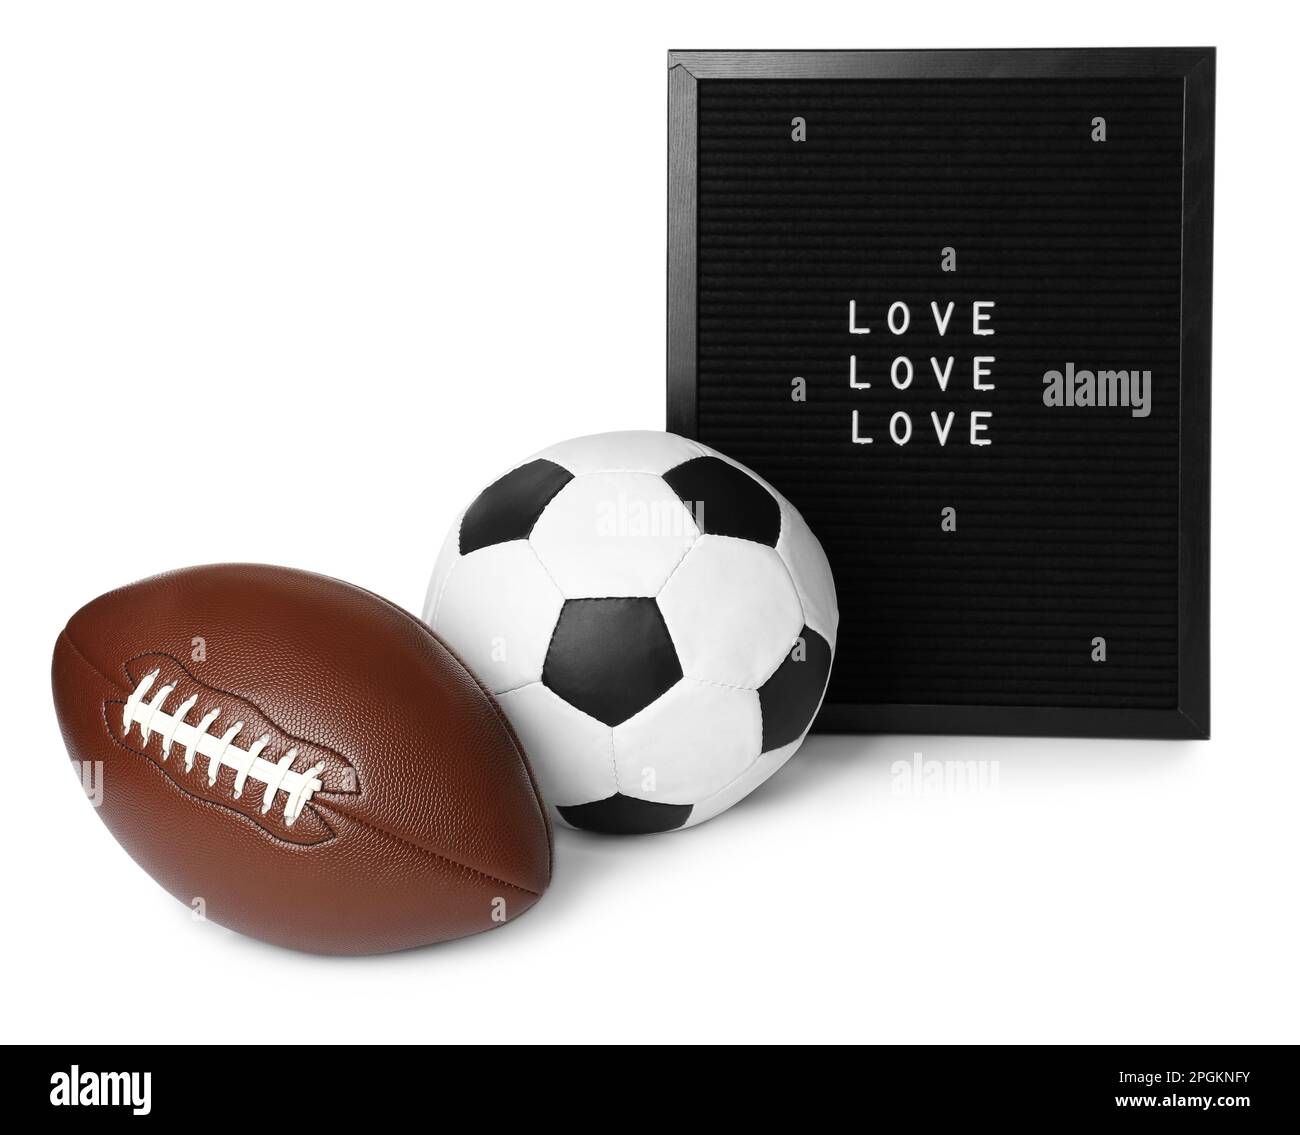 Calcio americano e palla di calcio vicino alla letter board con parole Amore su sfondo bianco Foto Stock